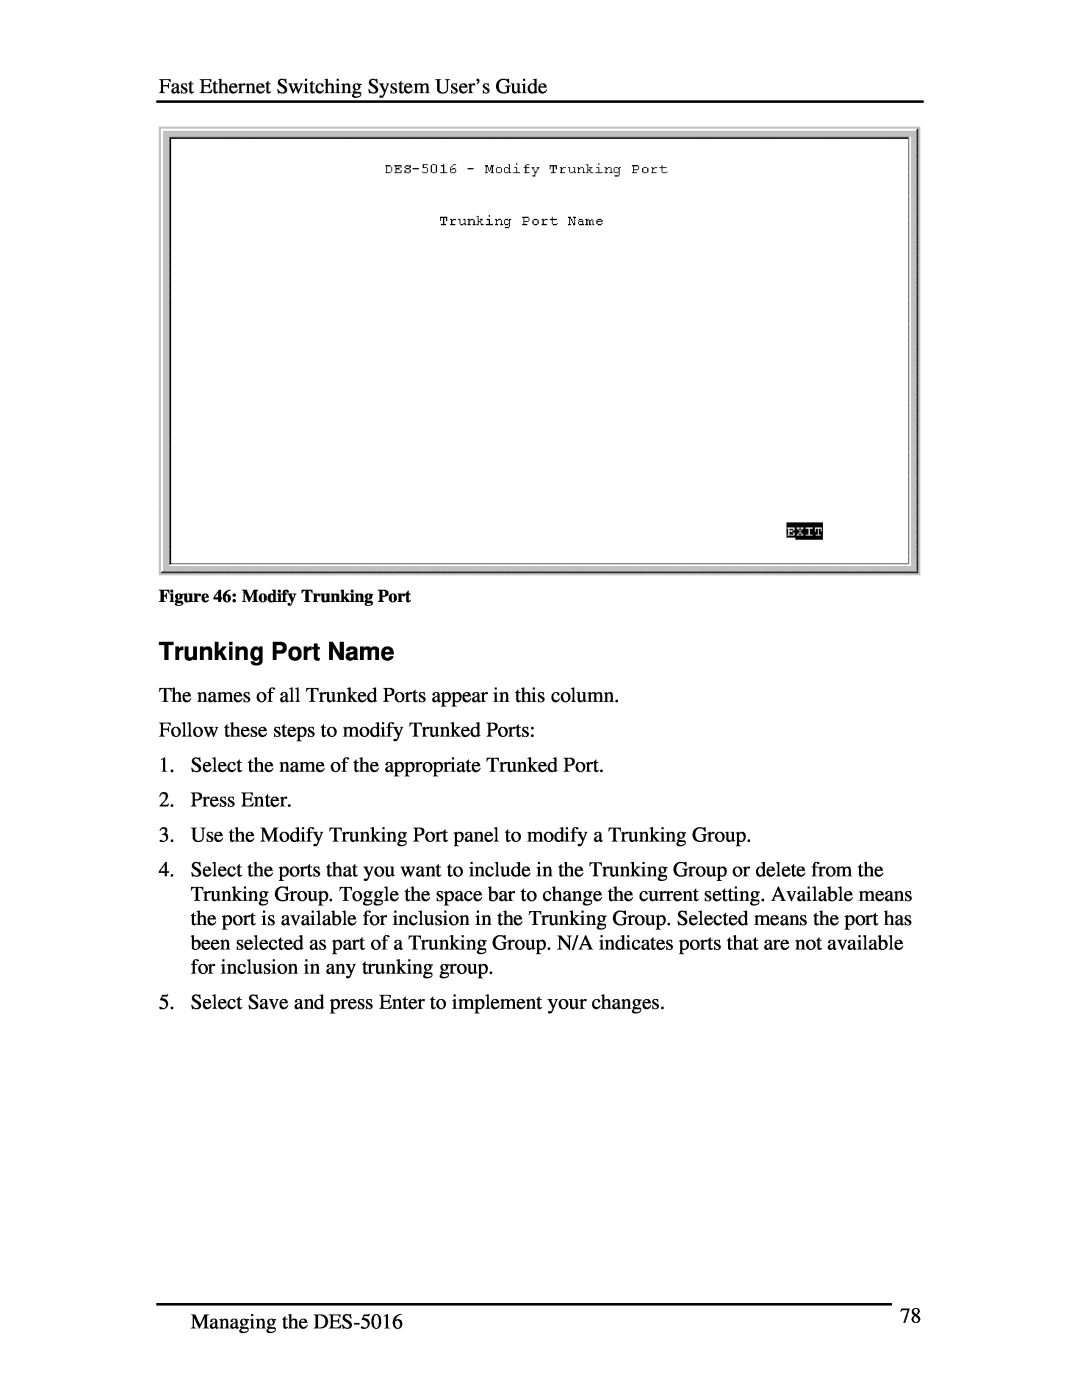 D-Link DES-5016 manual Trunking Port Name, Modify Trunking Port 